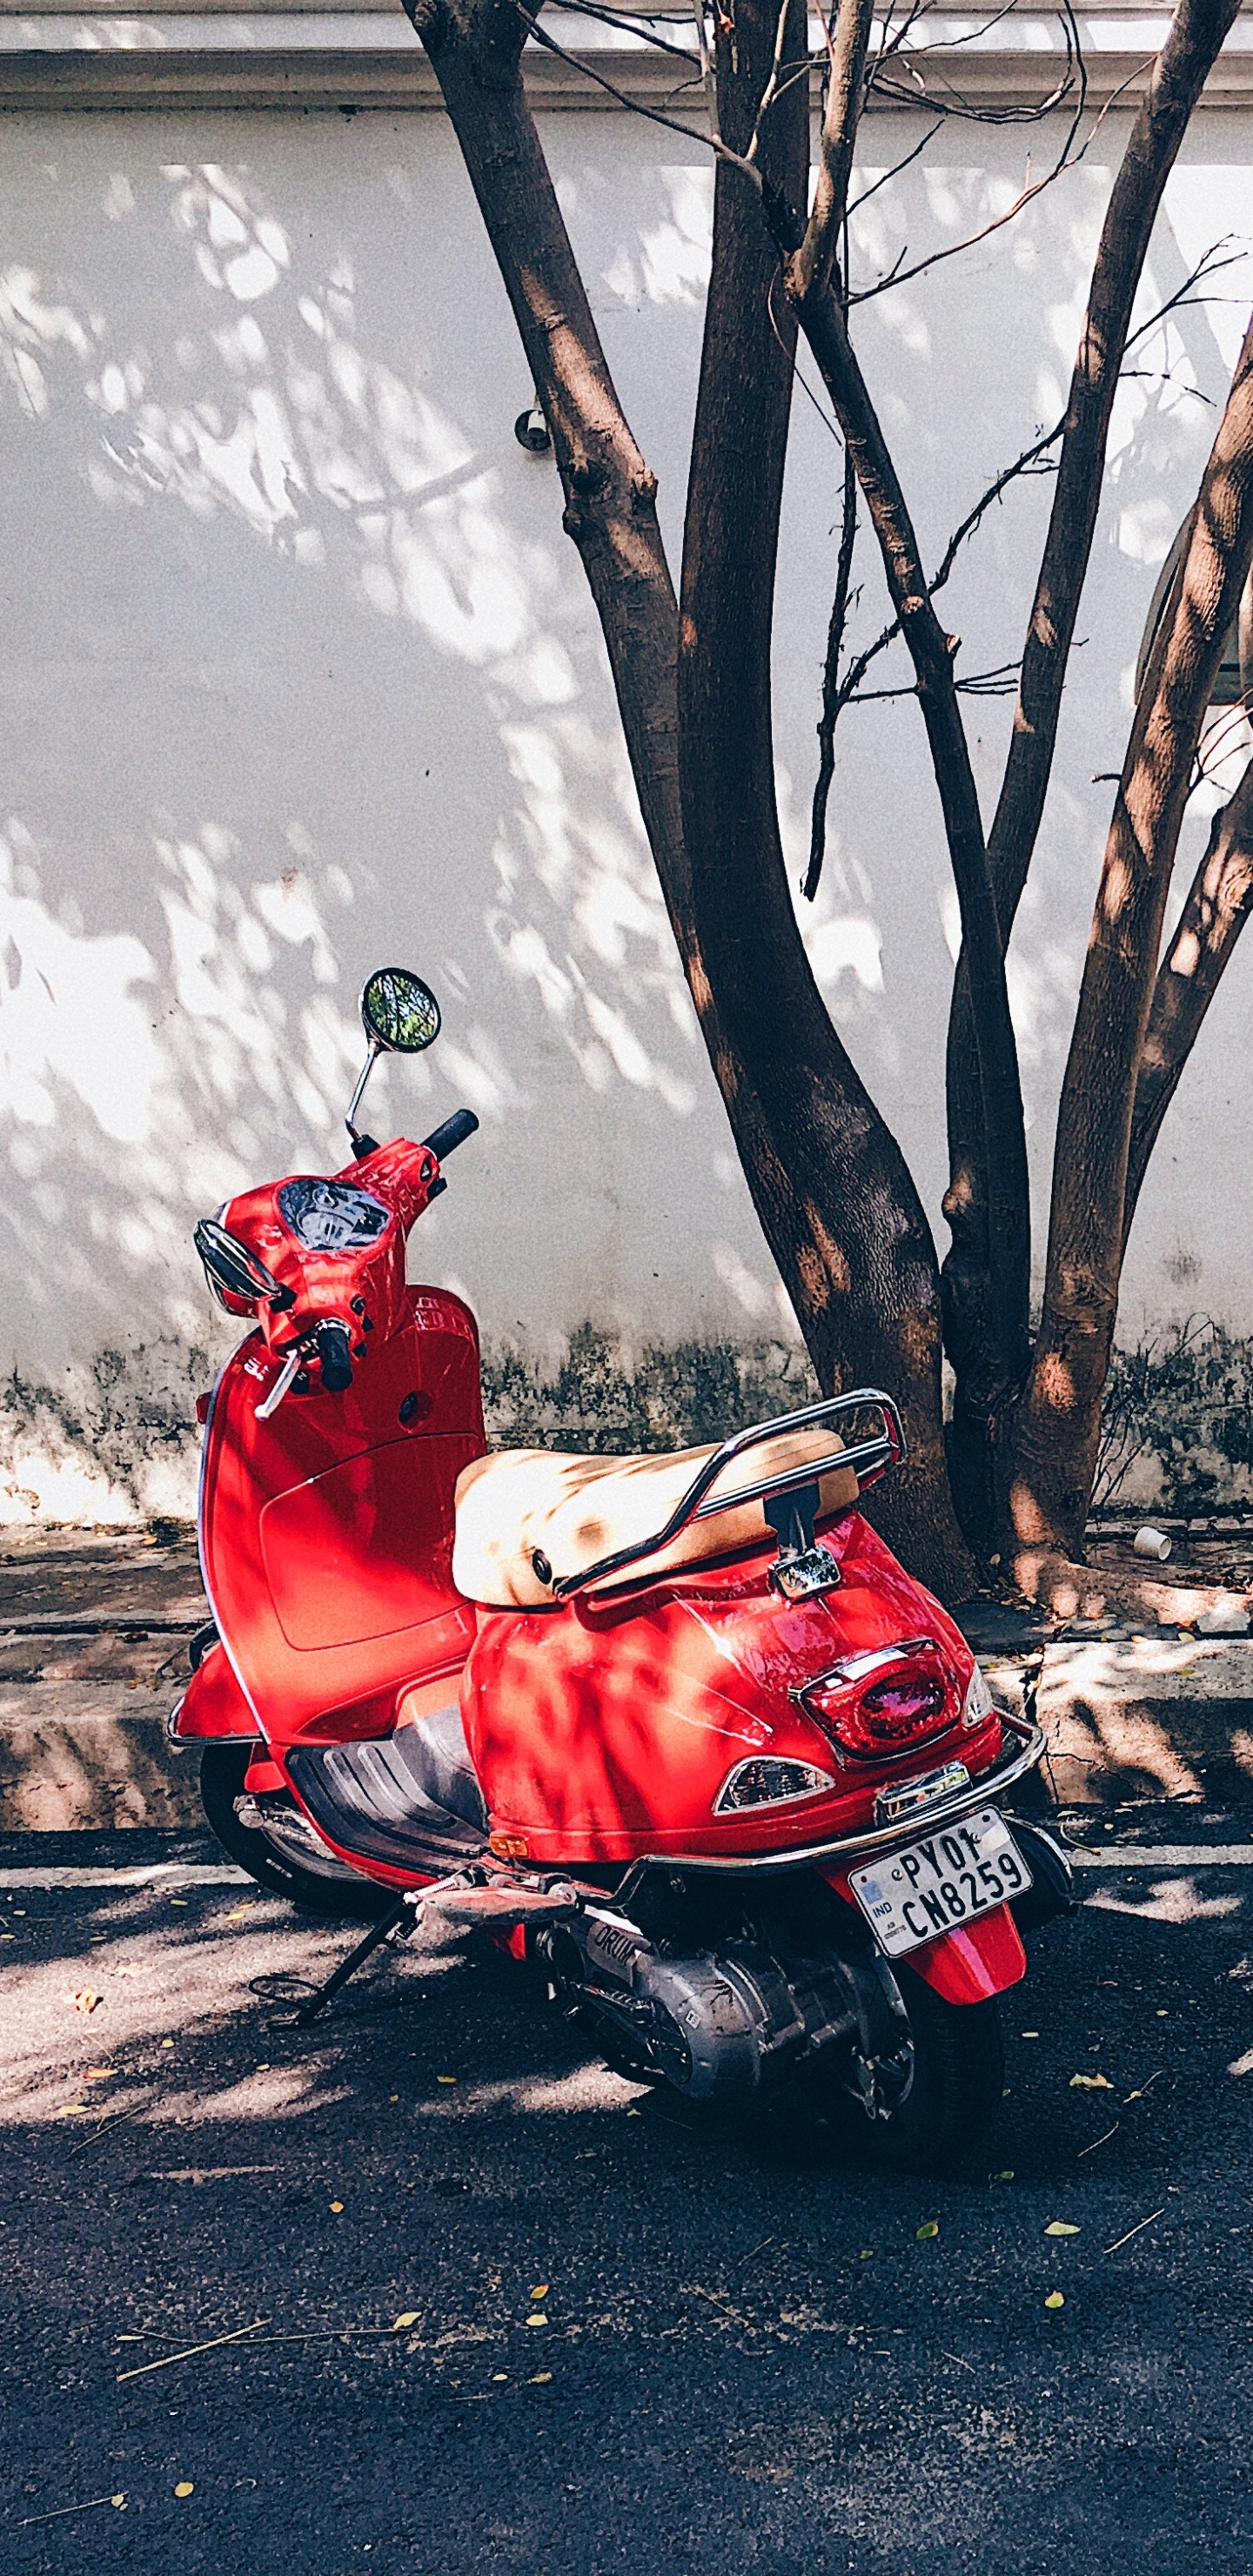 Hombre de Chaqueta Roja Montando Moto Roja en la Carretera Durante el Día. Wallpaper in 1440x2960 Resolution